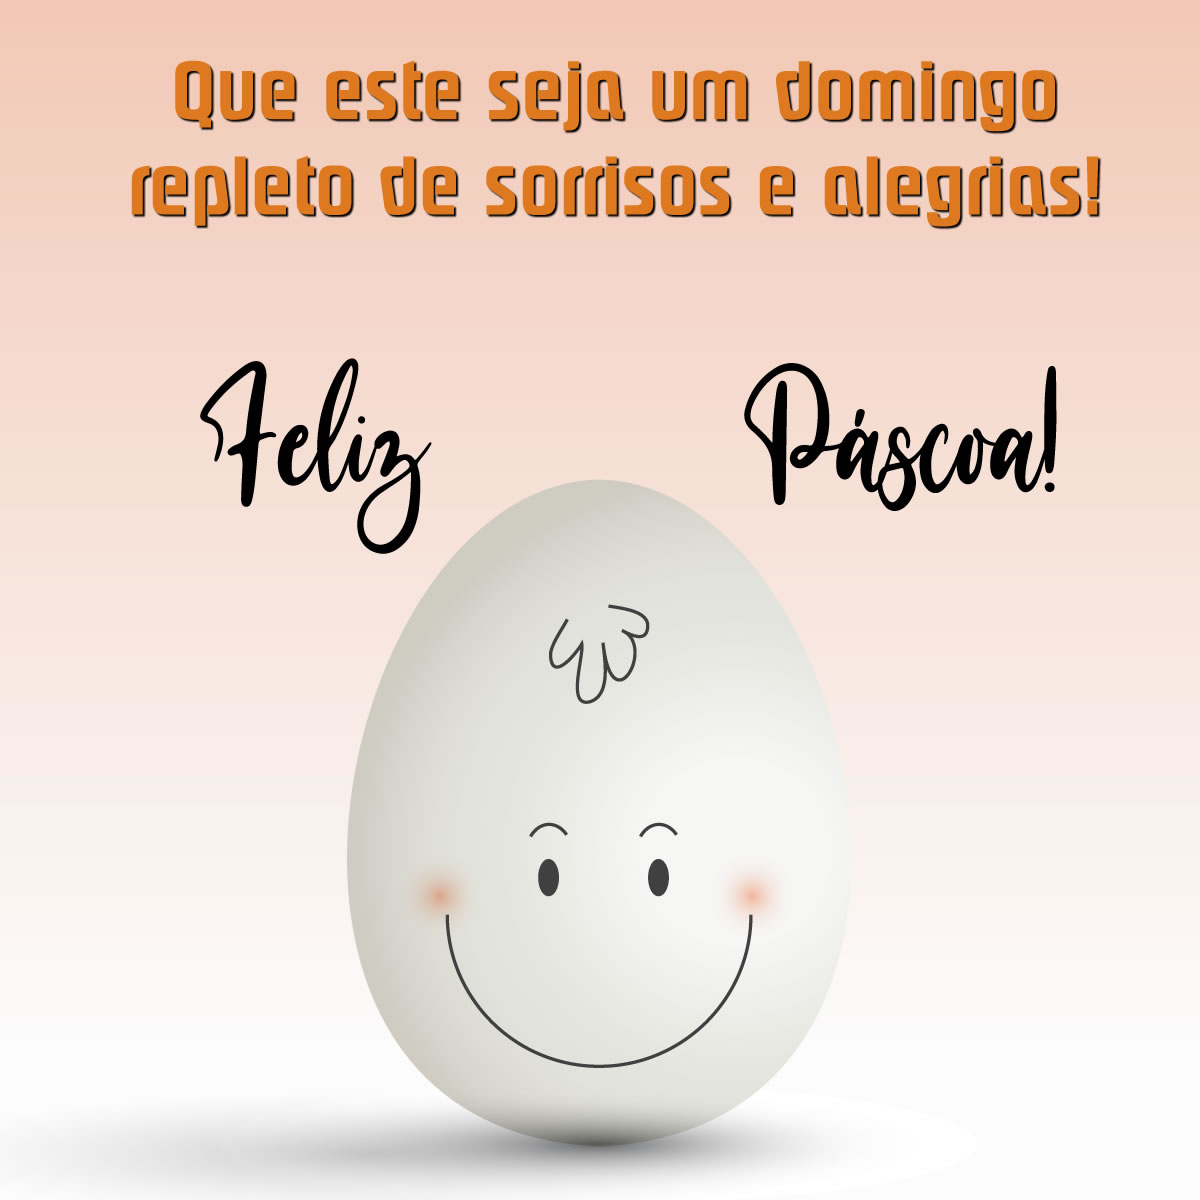 Imagem com um ovo fofo e sorridente com uma bela mensagem de saudação: Que este seja um domingo repleto de sorrisos e alegrias!